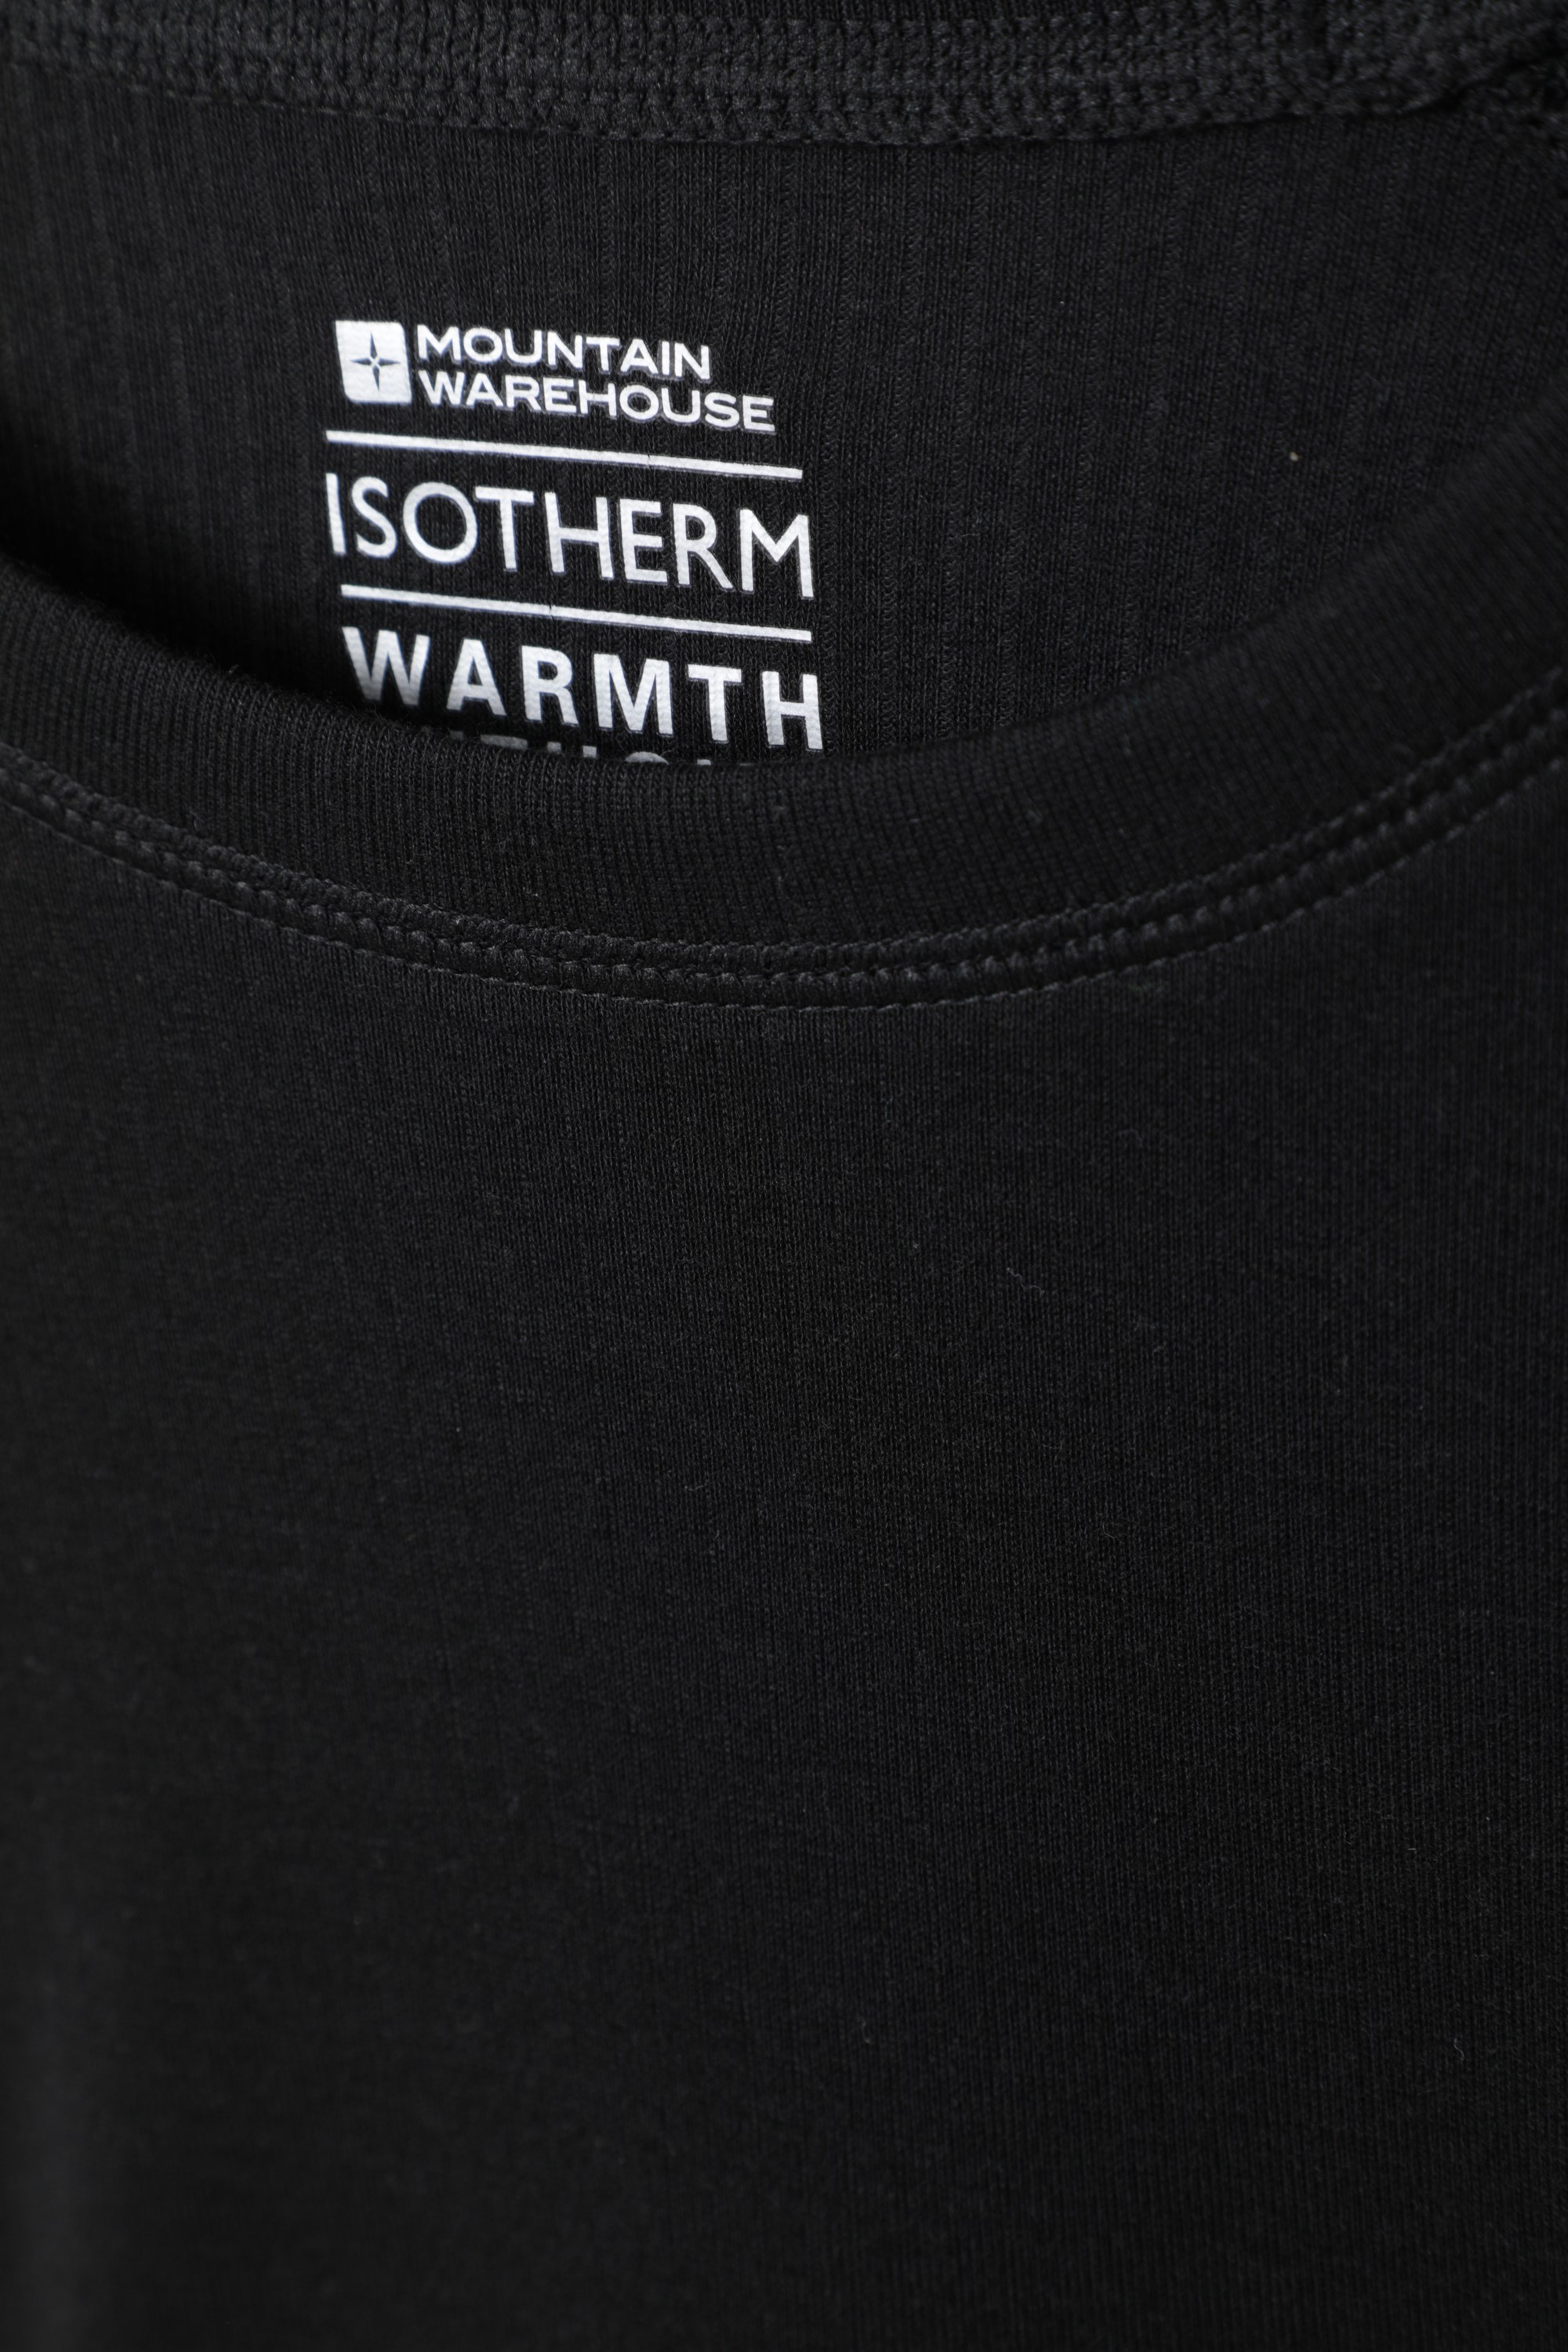 Capa térmica Isotherm Cuello Redondo cálida y Ligera Mountain Warehouse Camiseta Talus Estampada para Mujer Acampada en Invierno de Secado rápido para Senderismo 